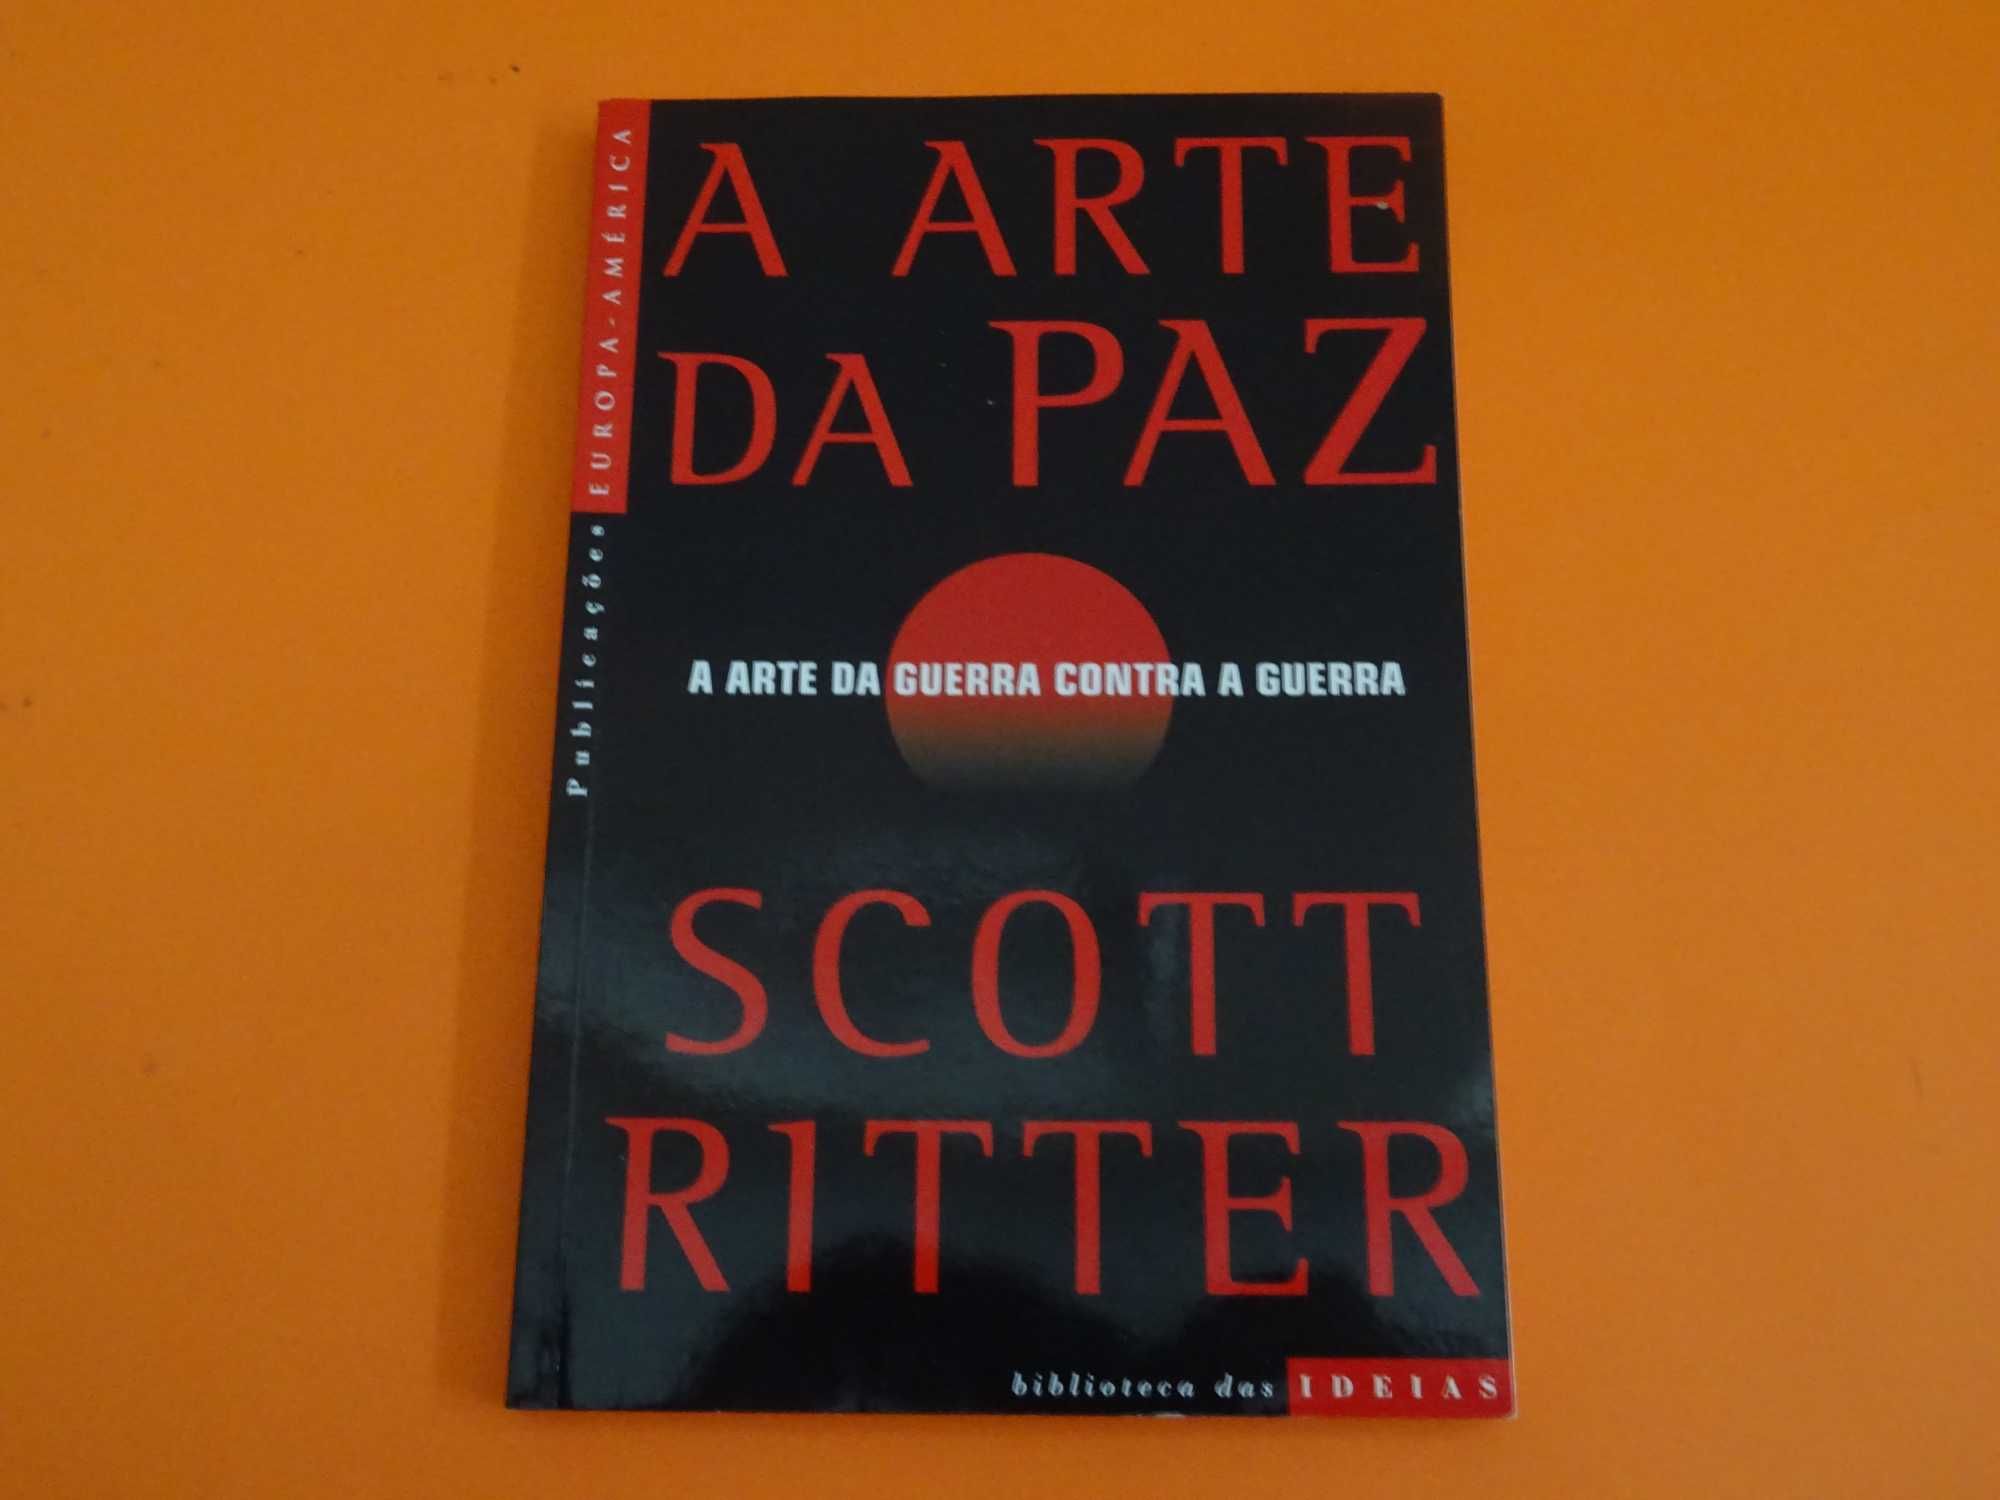 A Arte da Paz - Scott Ritter